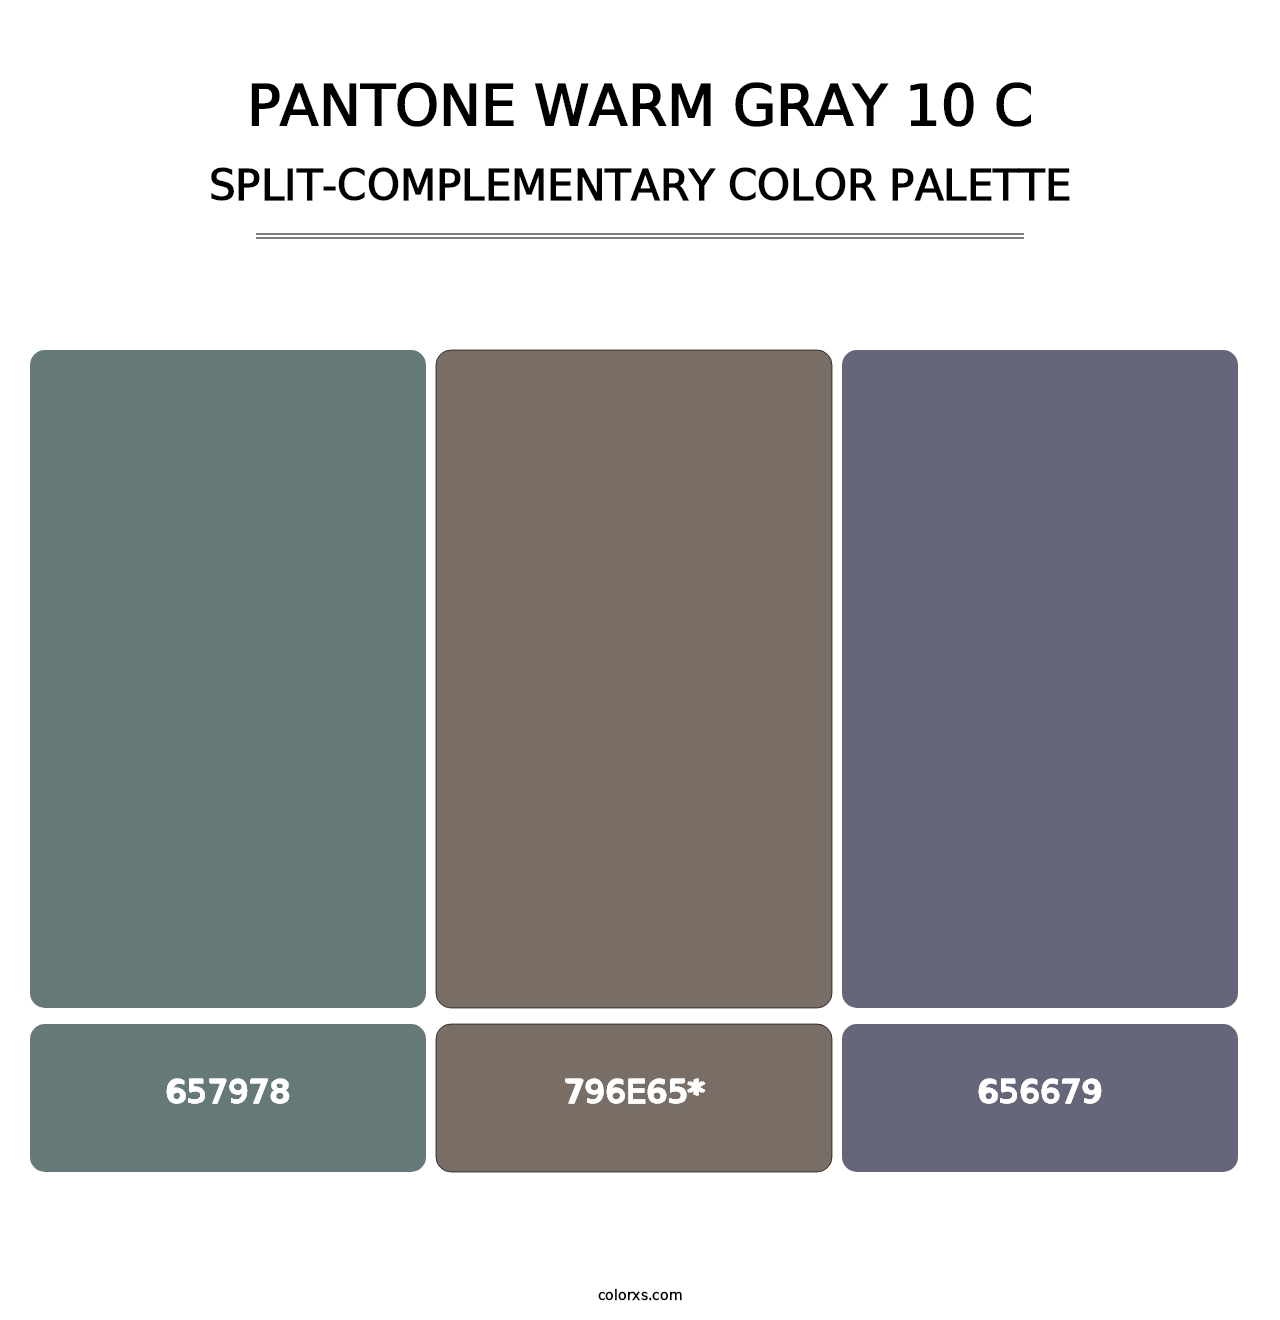 PANTONE Warm Gray 10 C - Split-Complementary Color Palette